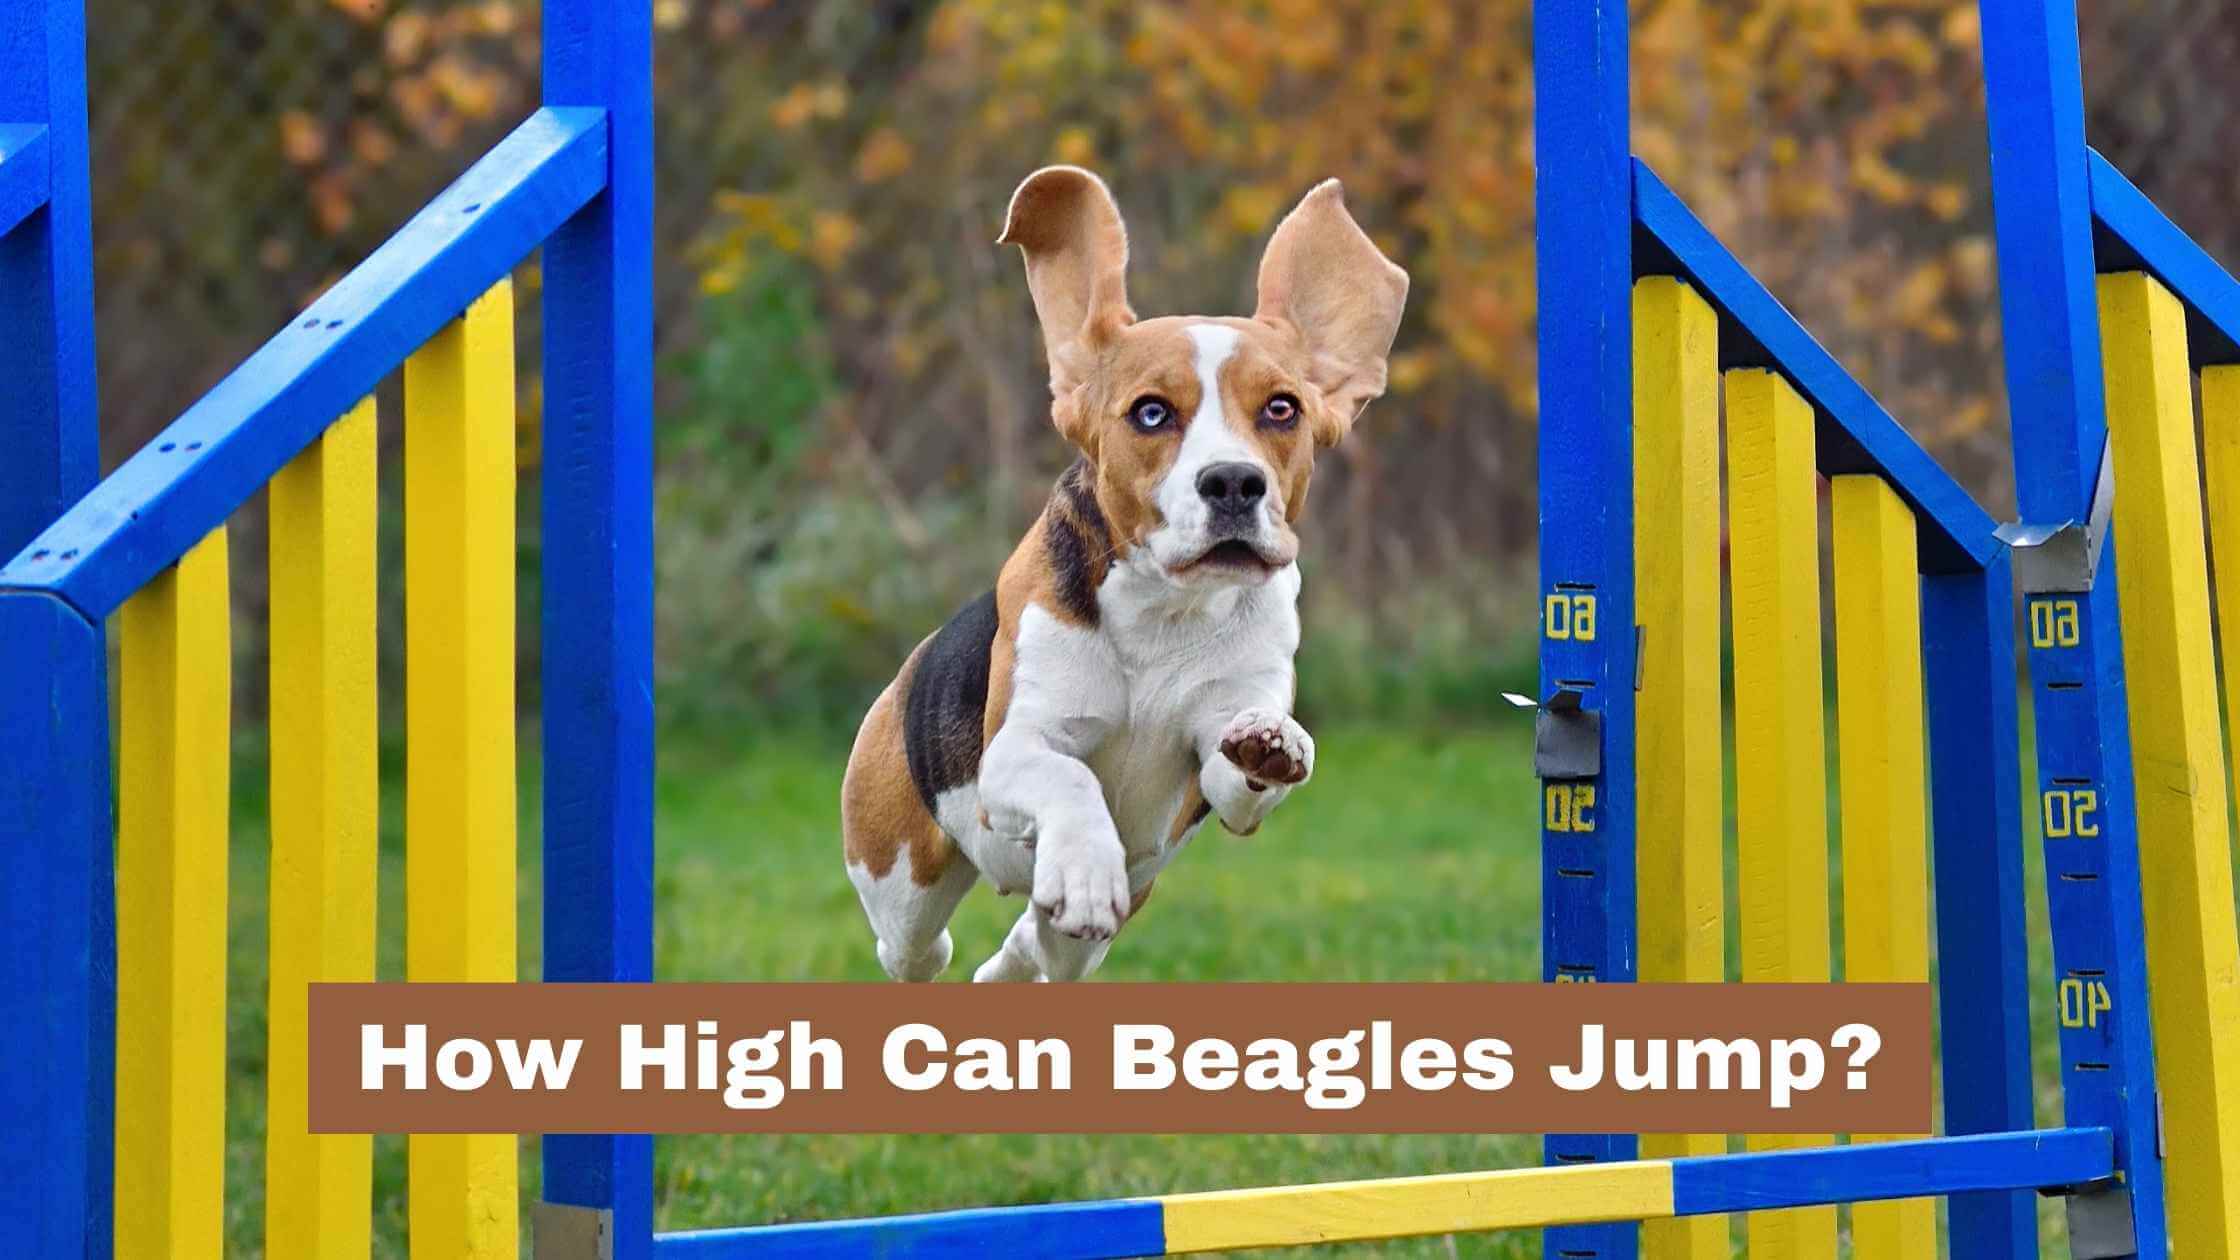 why do beagles jump so much? 2